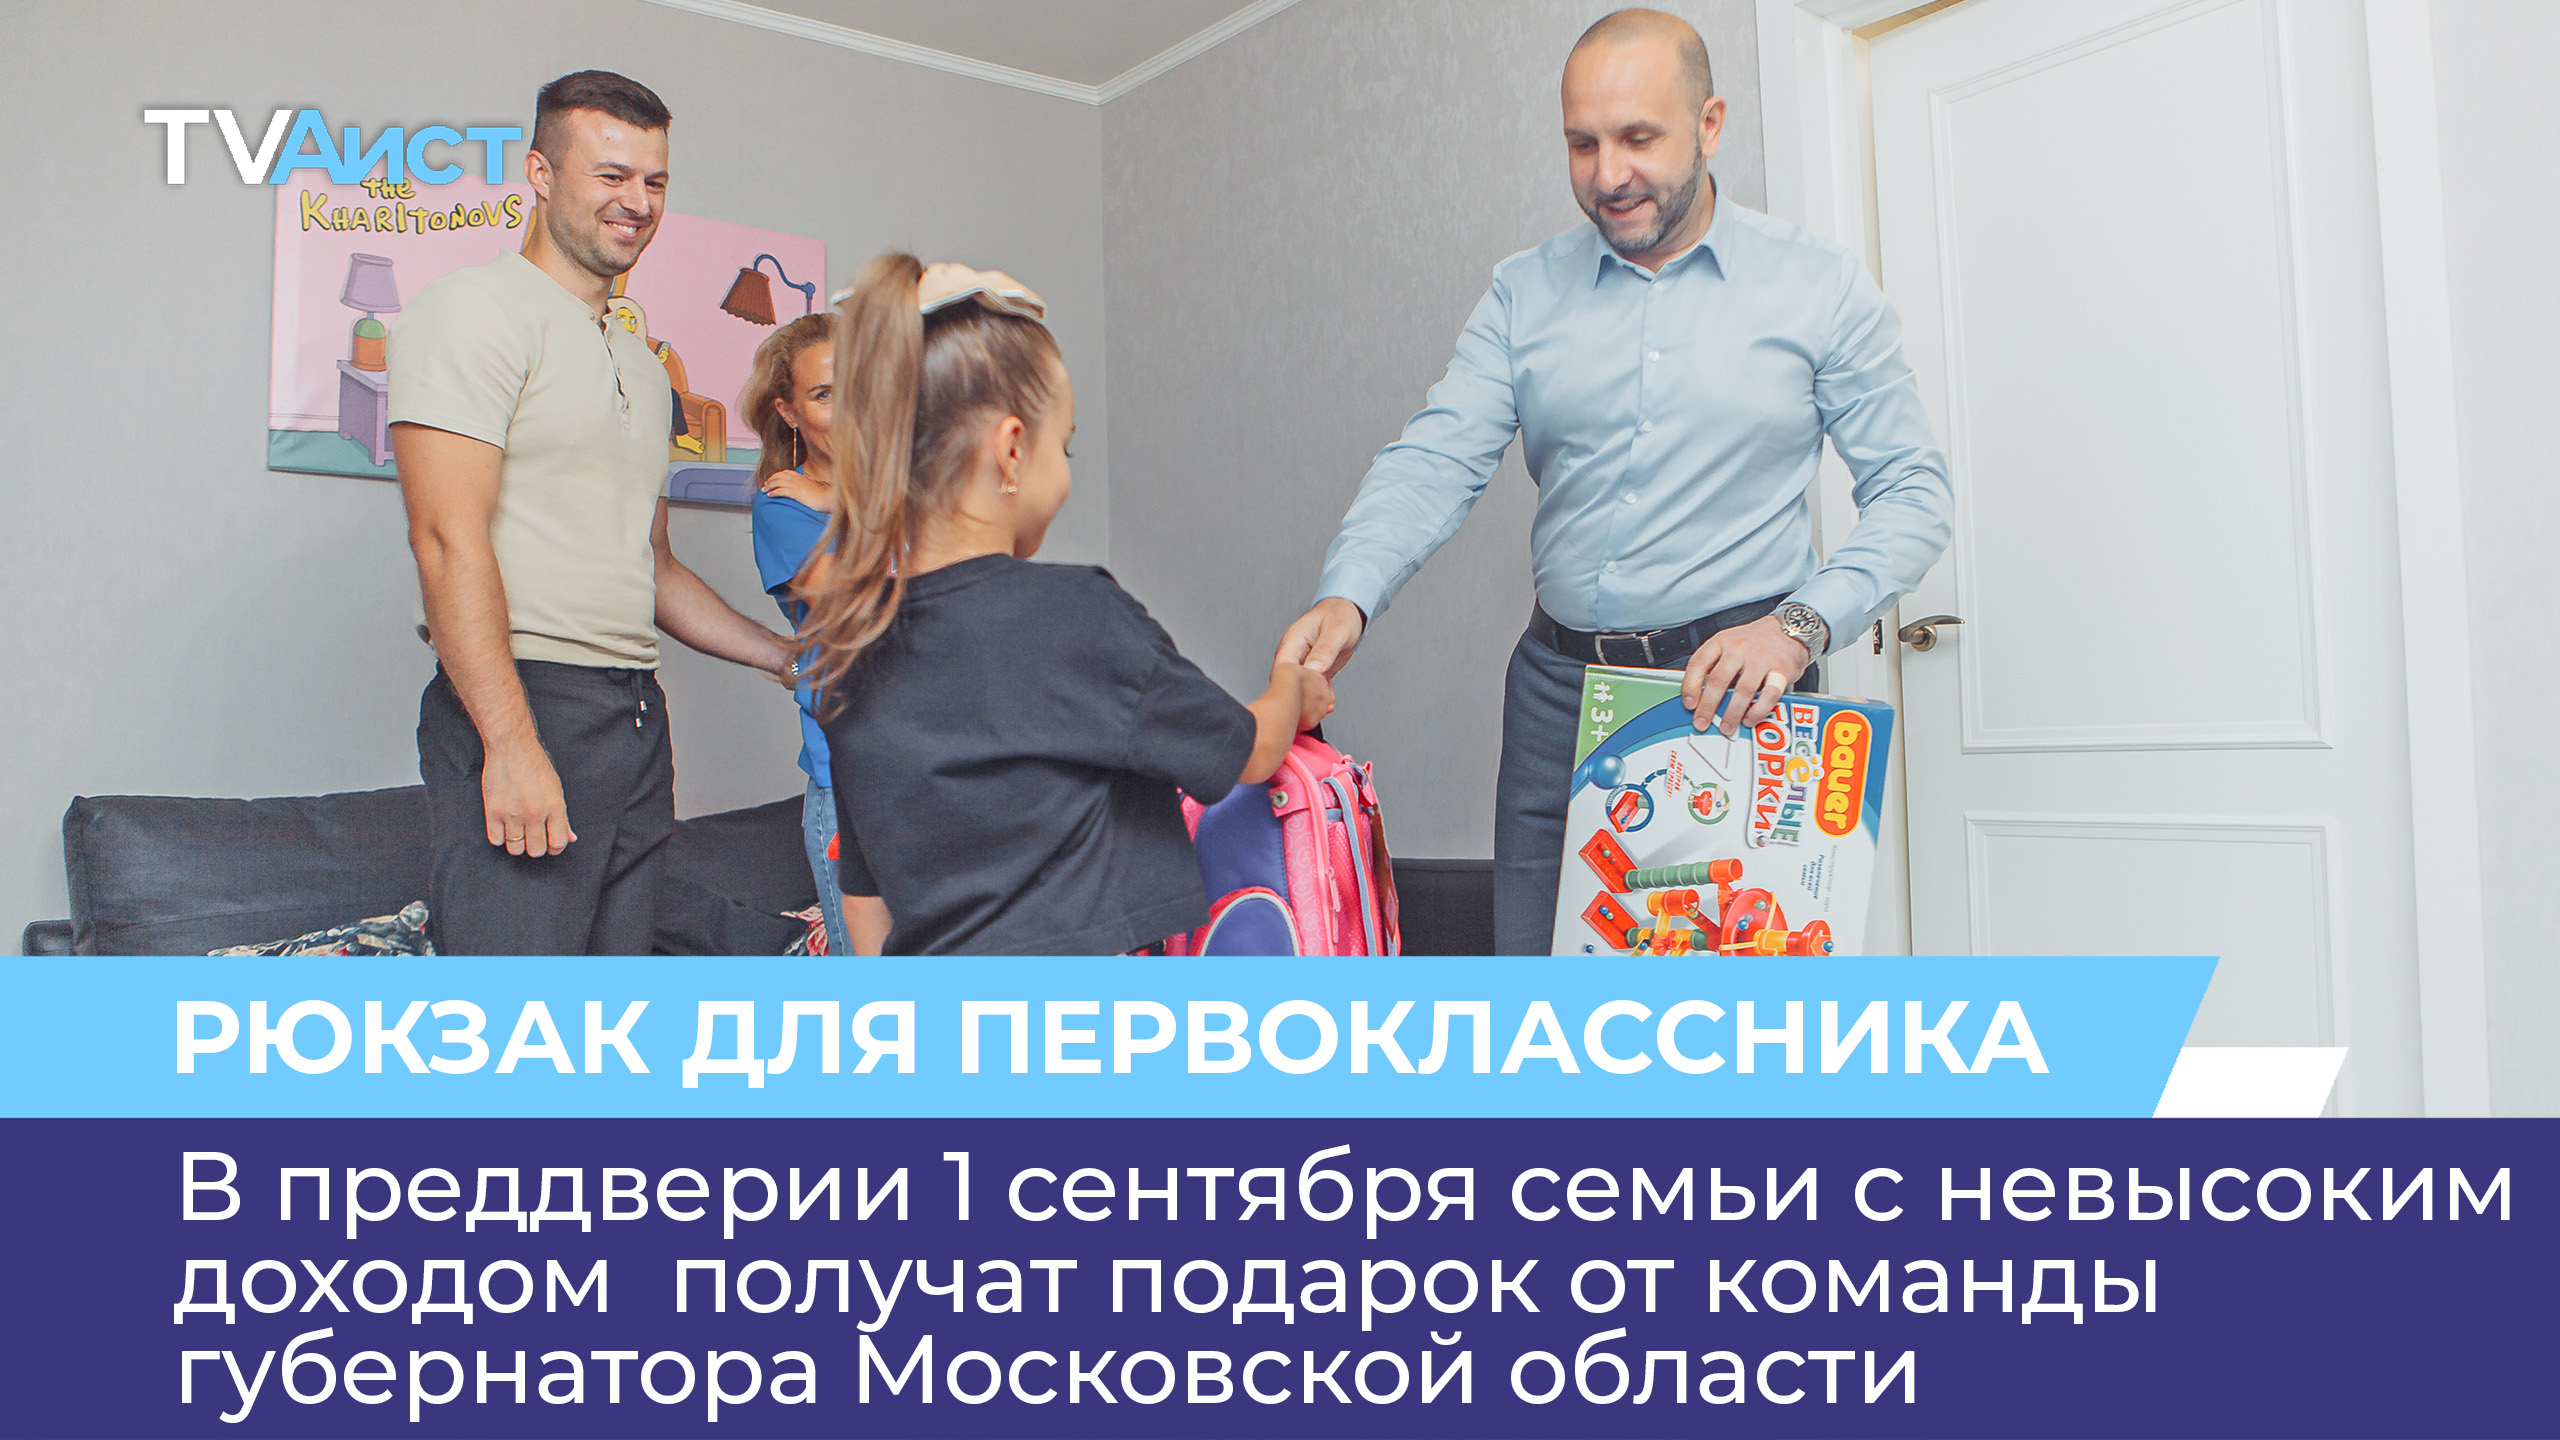 В преддверии 1 сентября семьи с невысоким доходом получат подарок от губернатора Московской области